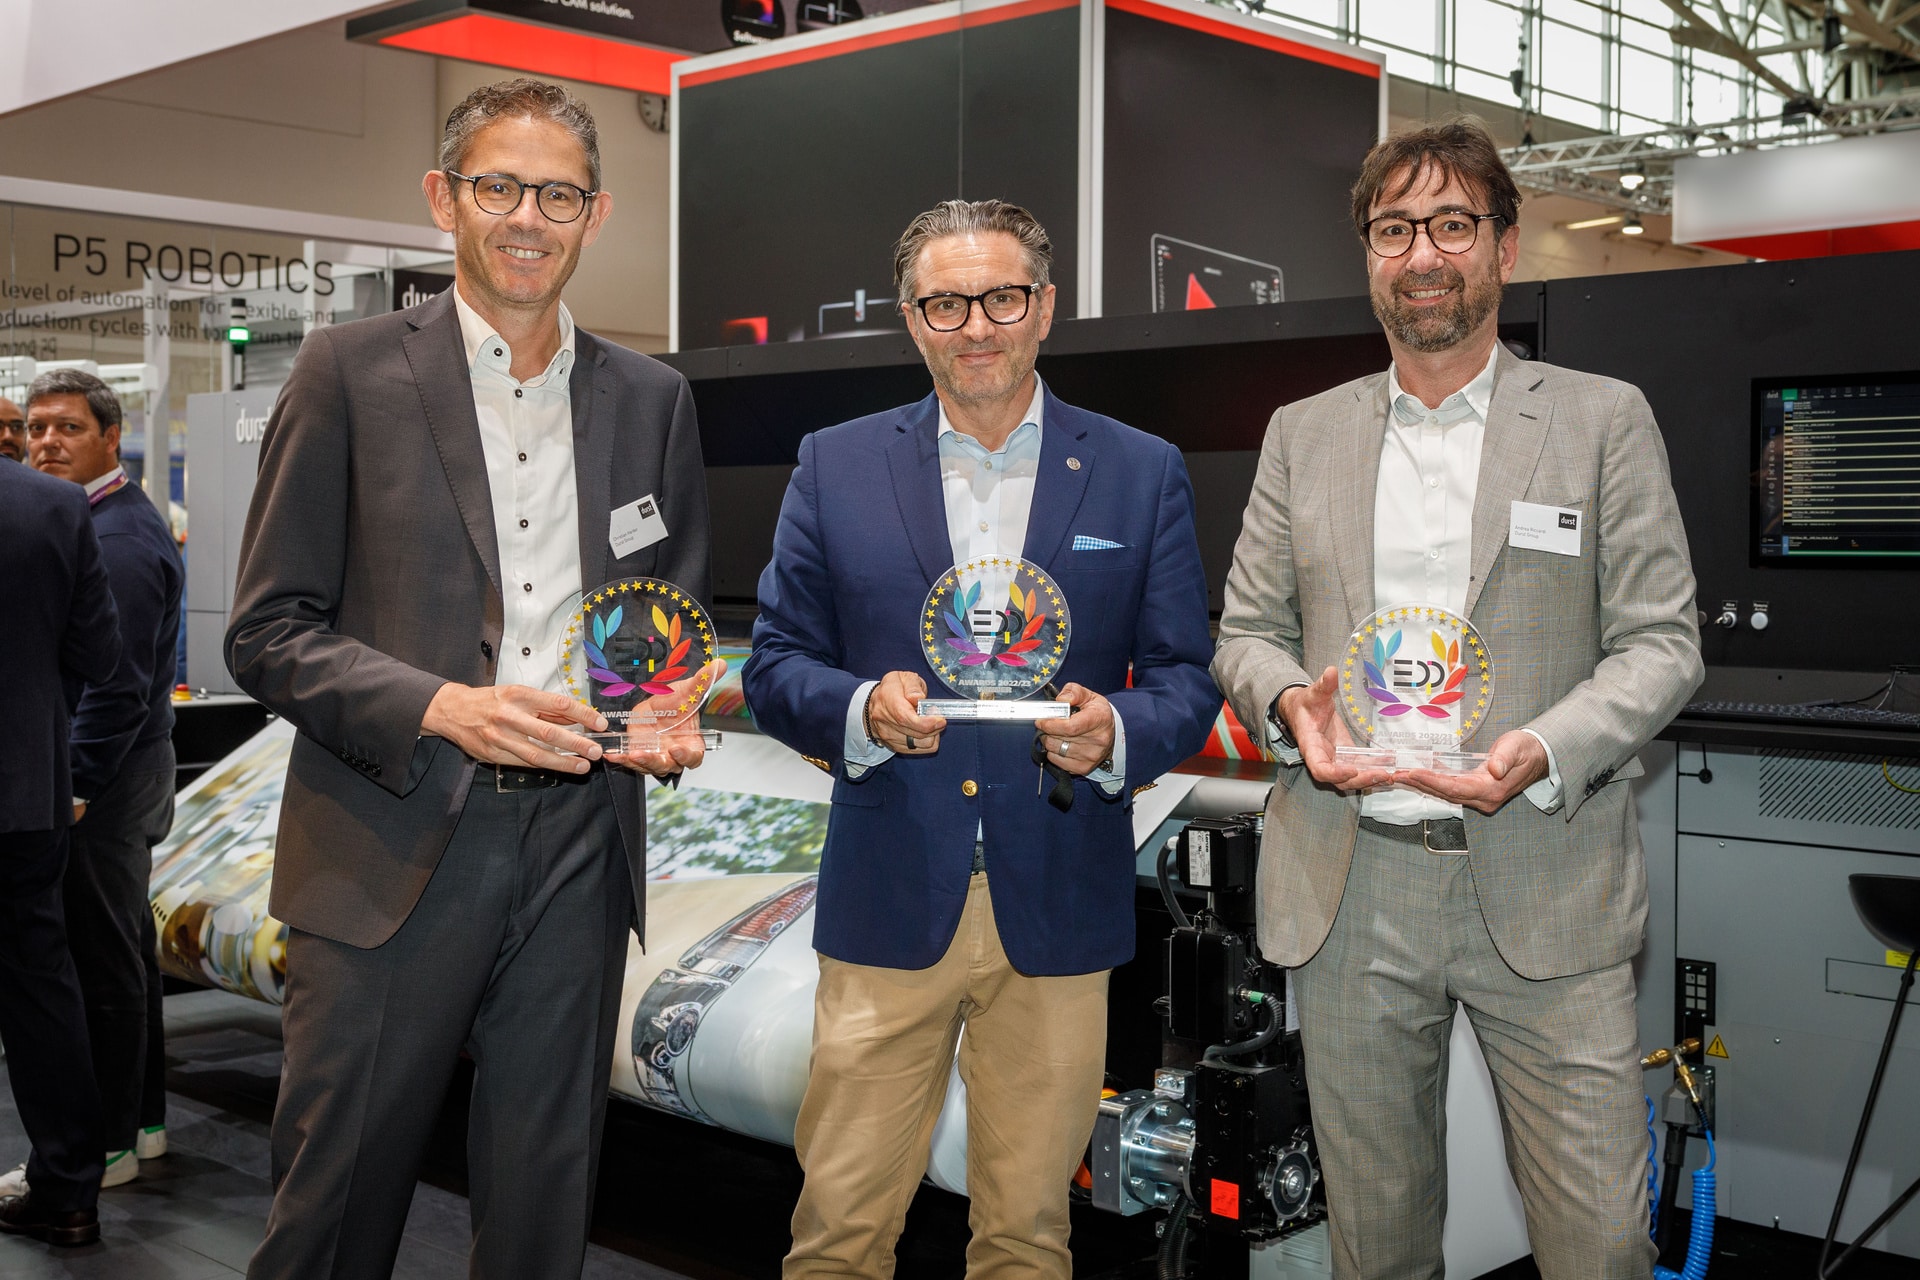 Gleich drei Awards erhielt die Durst Group für ihre digitalen Produktionsmaschinen und Software (Quelle: Durst Group)